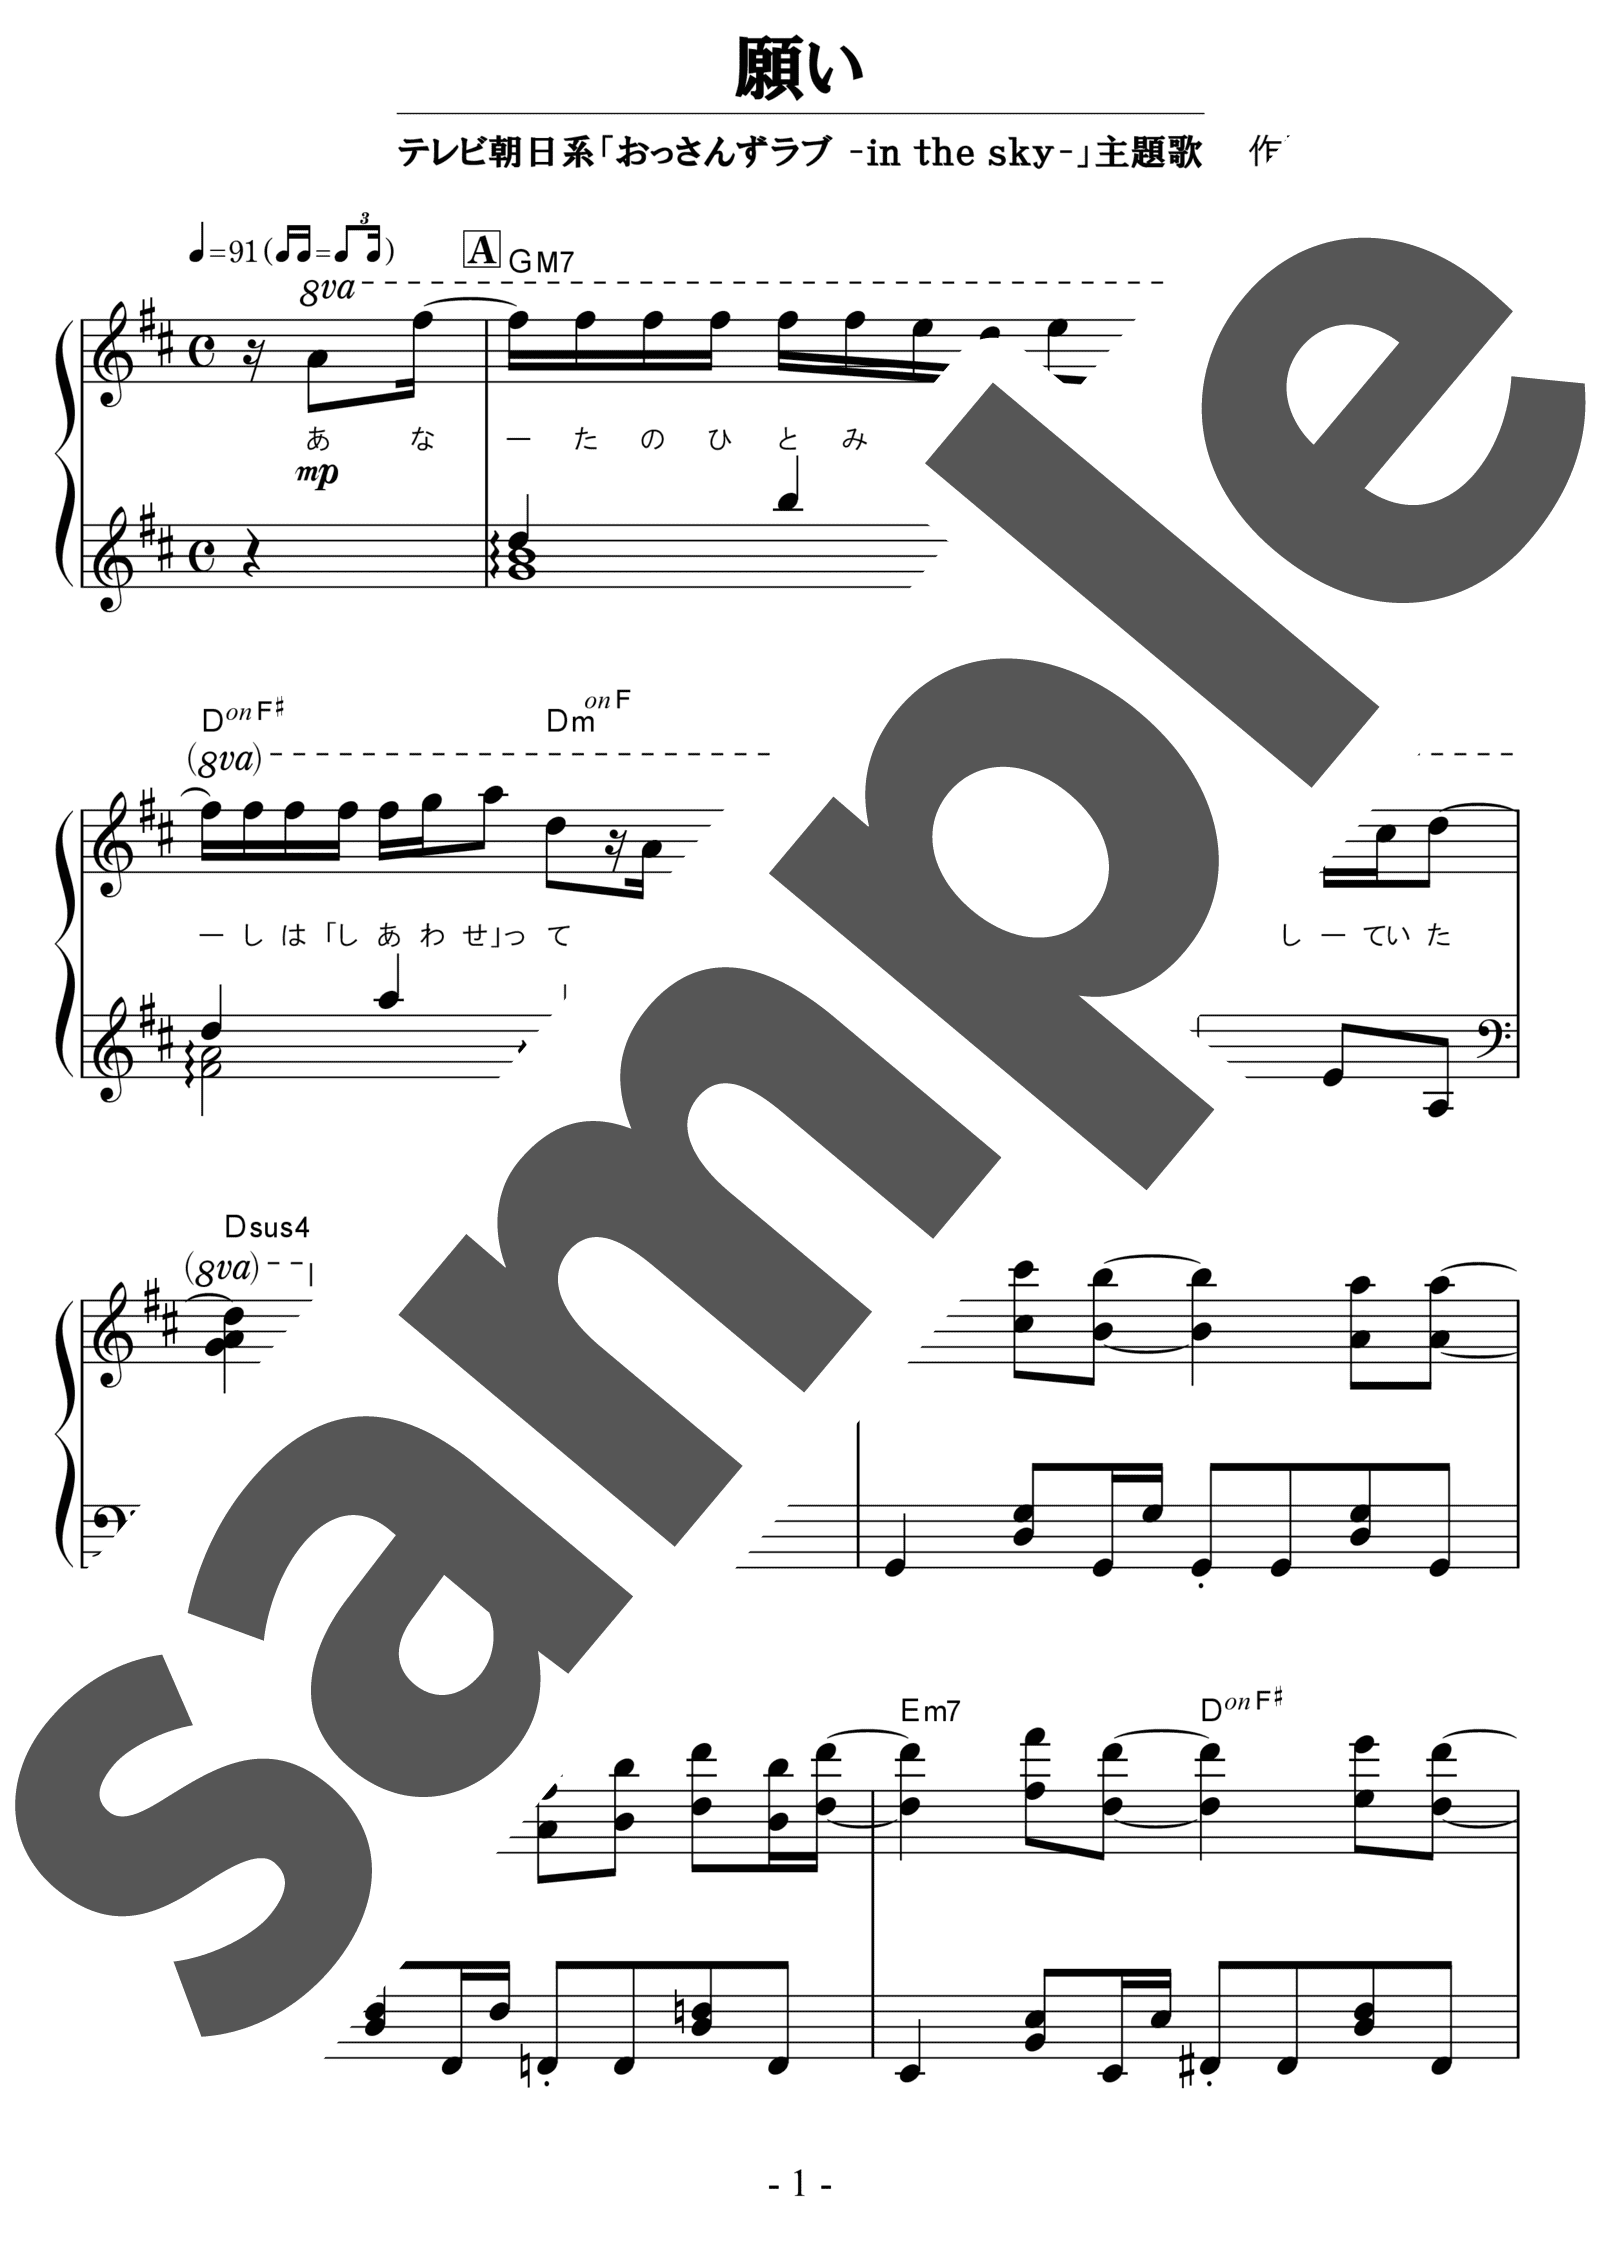 ピアノ楽譜 願い Sumika ソロ 中級 電子楽譜カノン